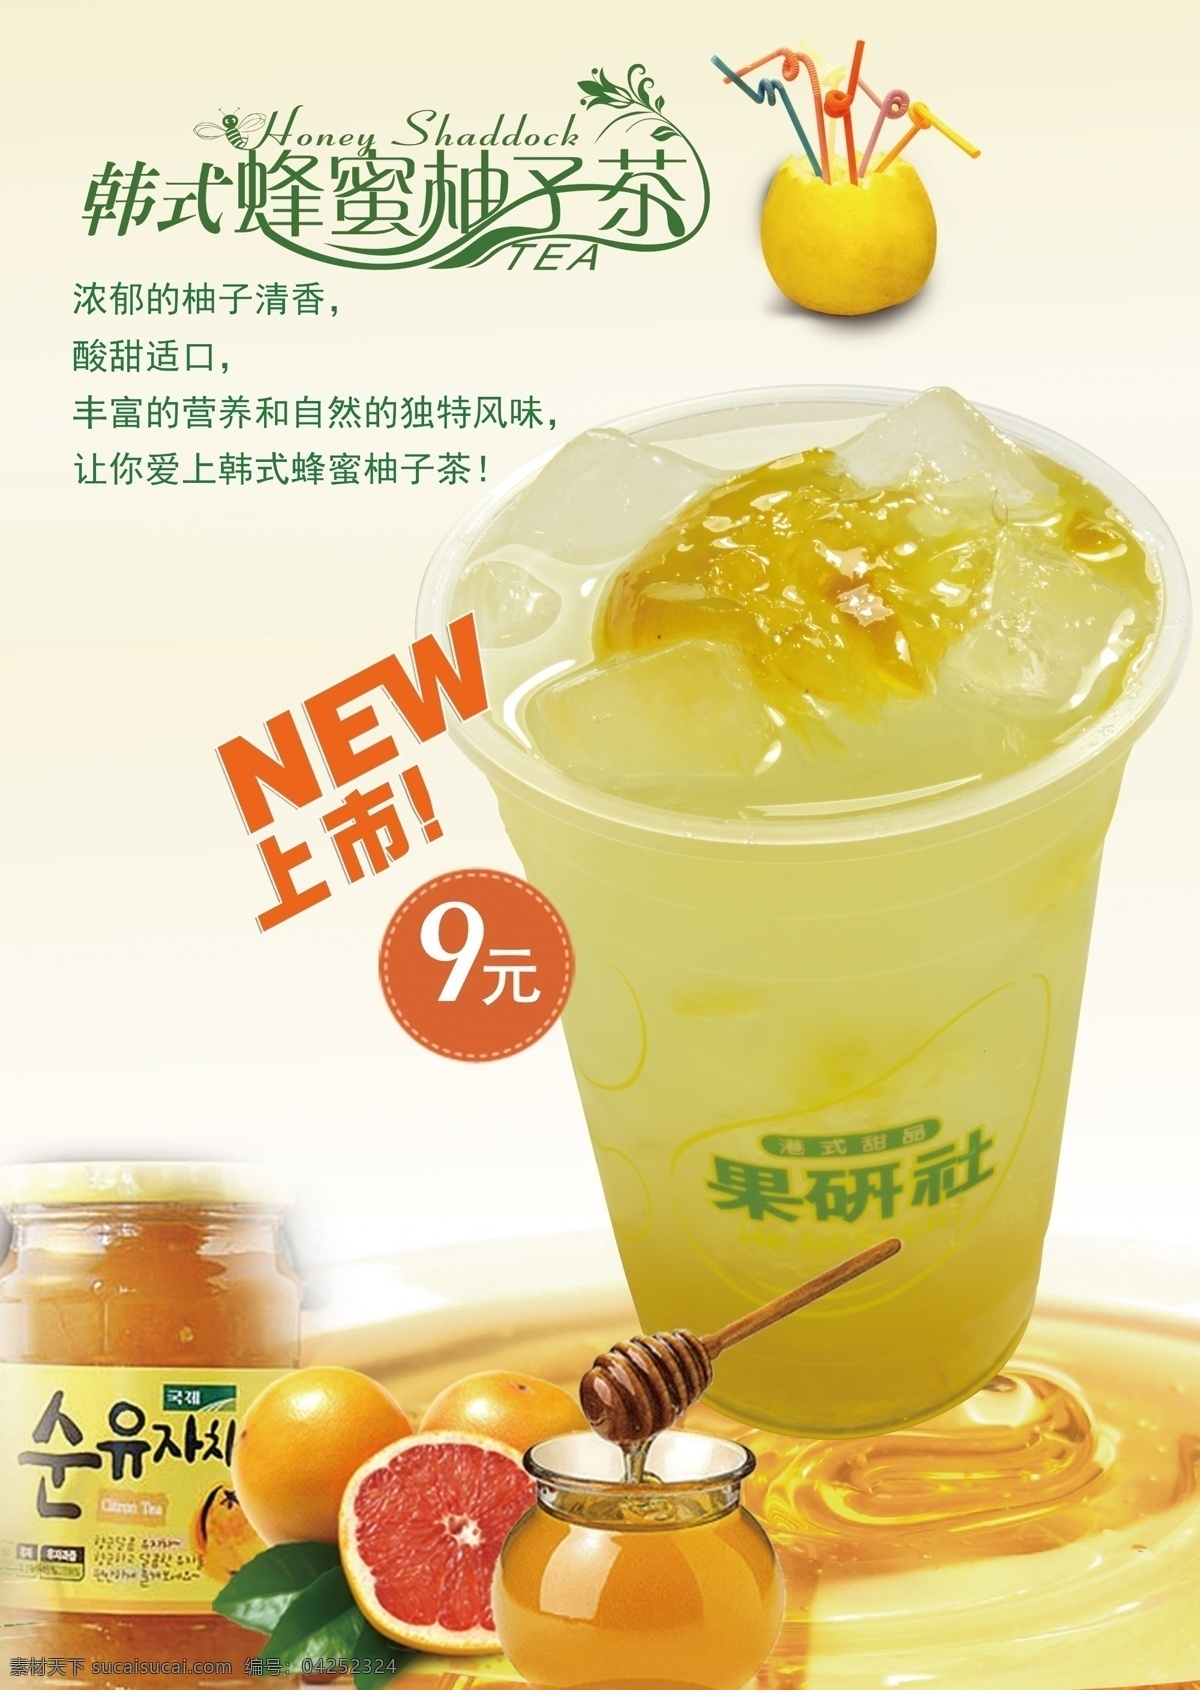 蜂蜜柚子茶 柚子茶 蜂蜜 西柚 字体设计 奶茶海报 韩国柚子茶 广告设计模板 源文件